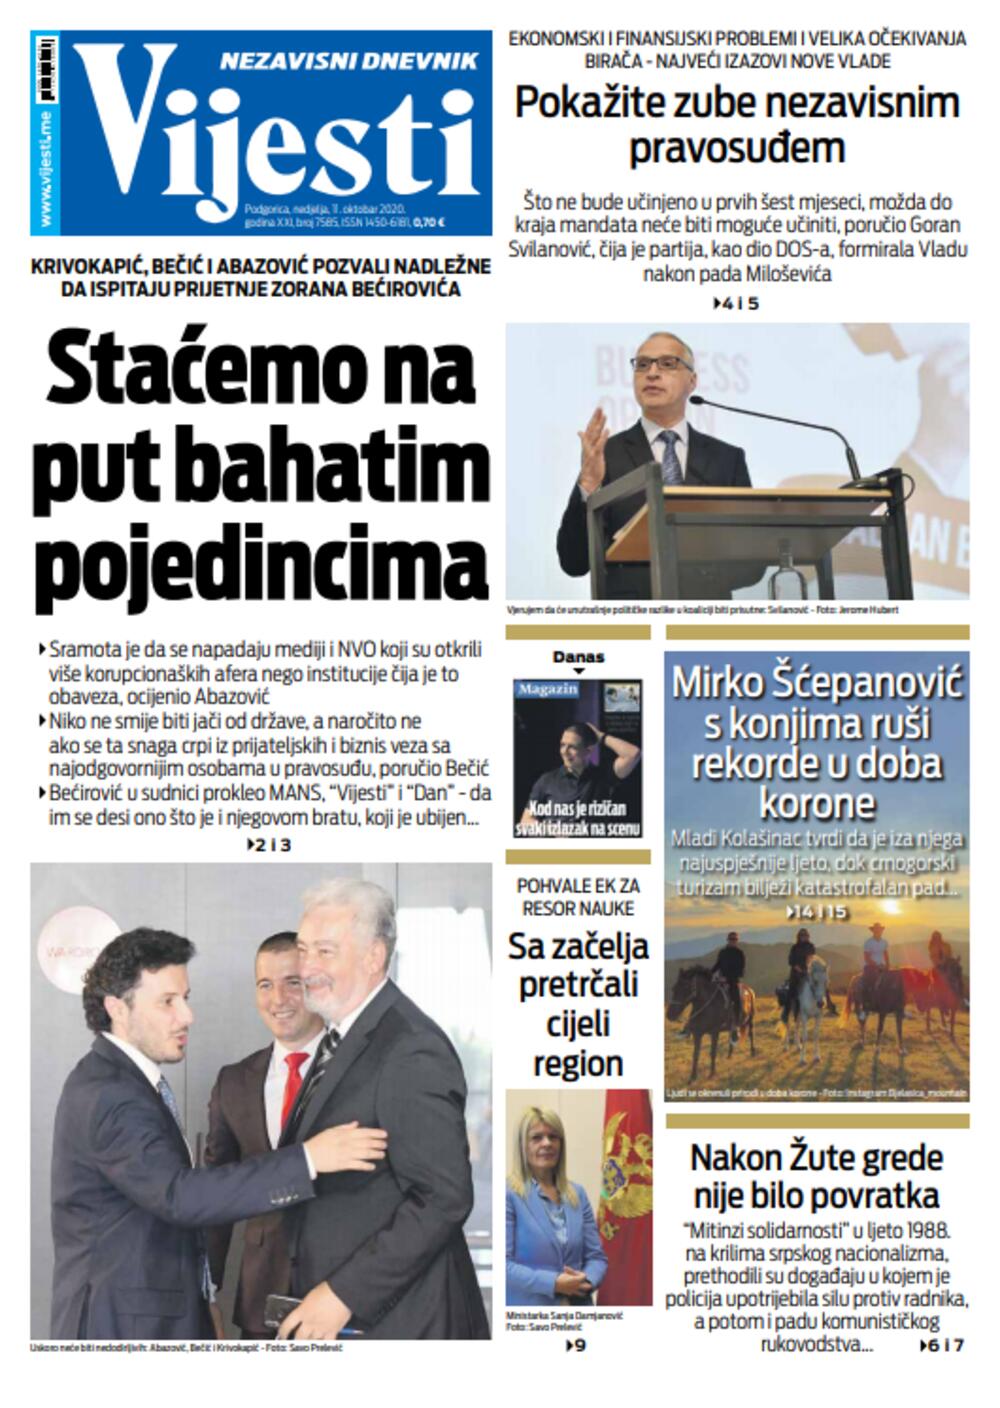 Naslovna strana "Vijesti" za 11. oktobar, Foto: Vijesti